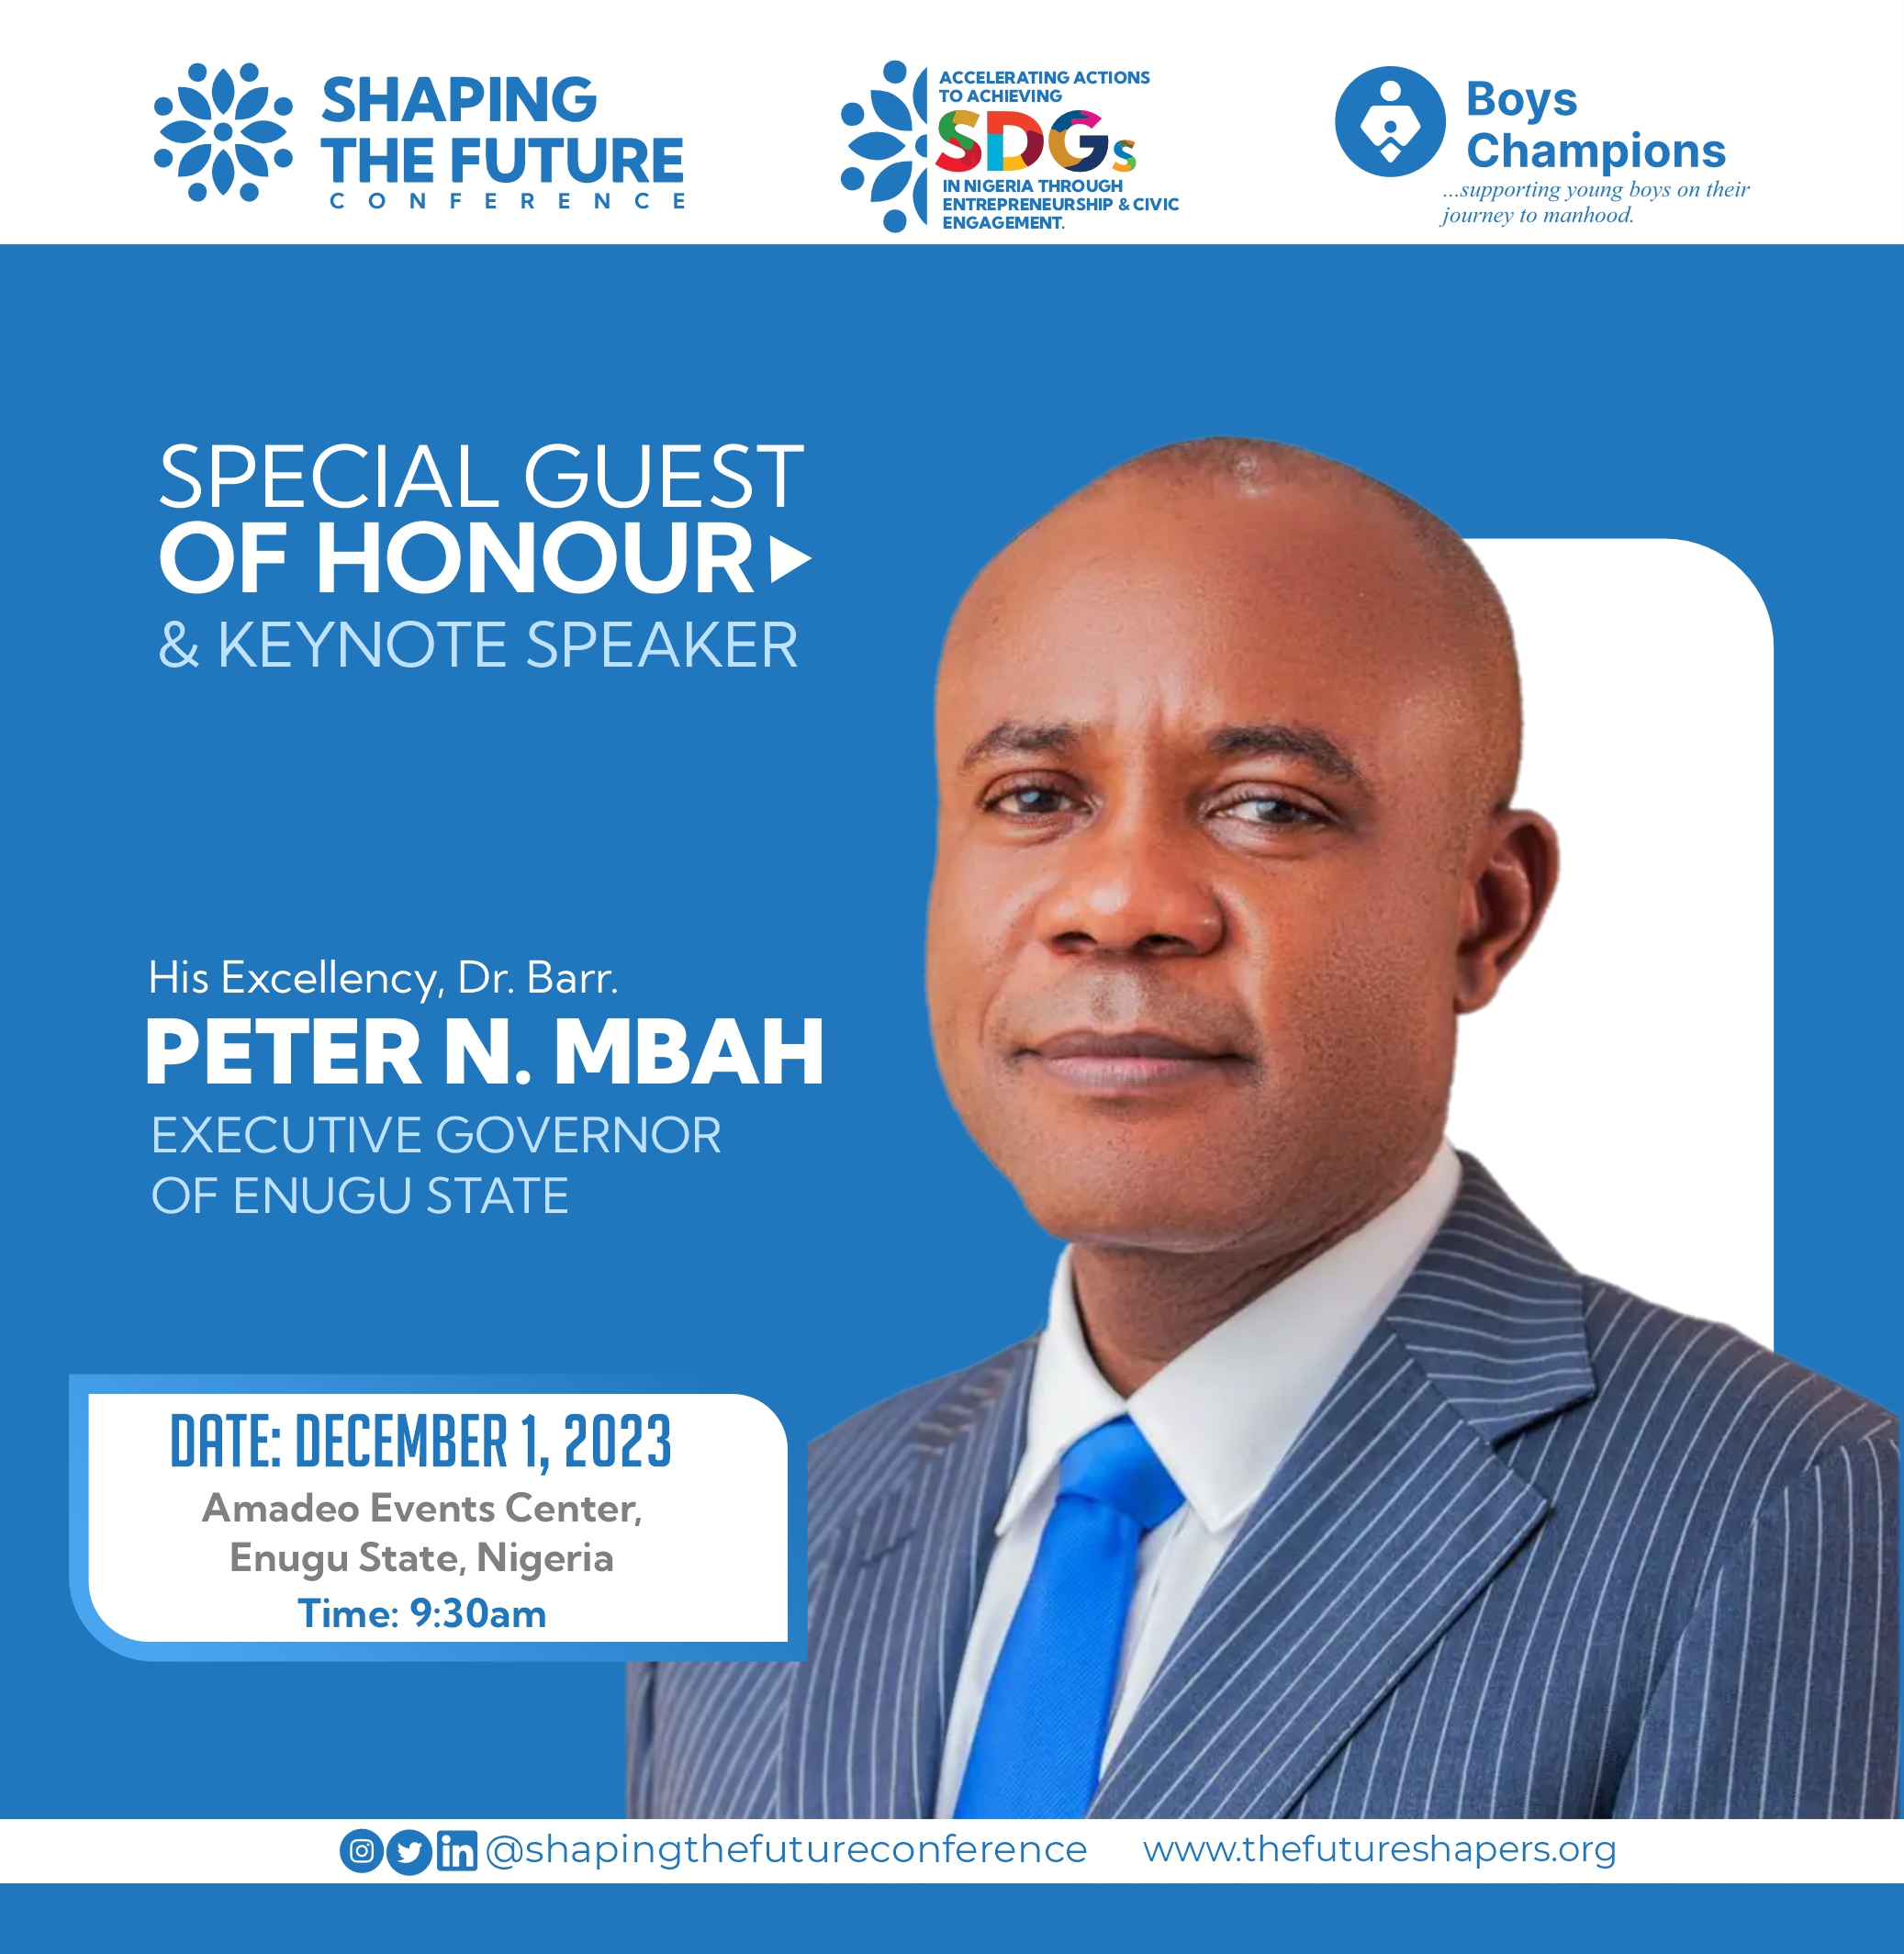 His Excellency, Dr. Peter N. Mbah